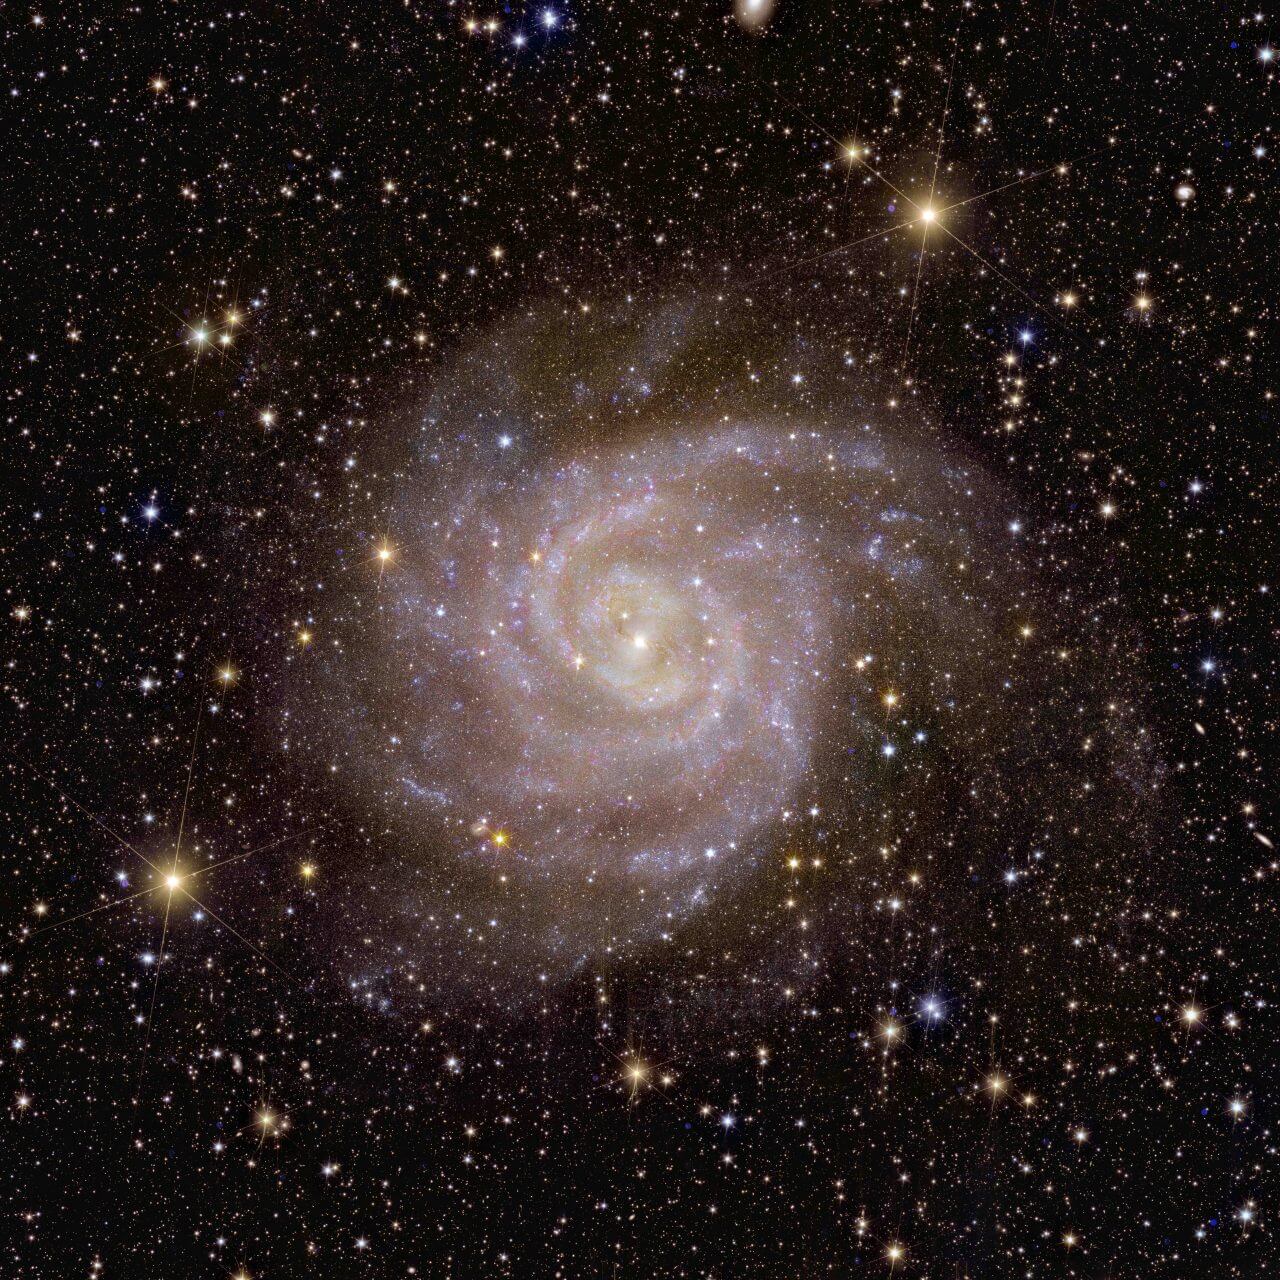 ESAのユークリッド宇宙望遠鏡が撮影した“隠された銀河”「IC 342」